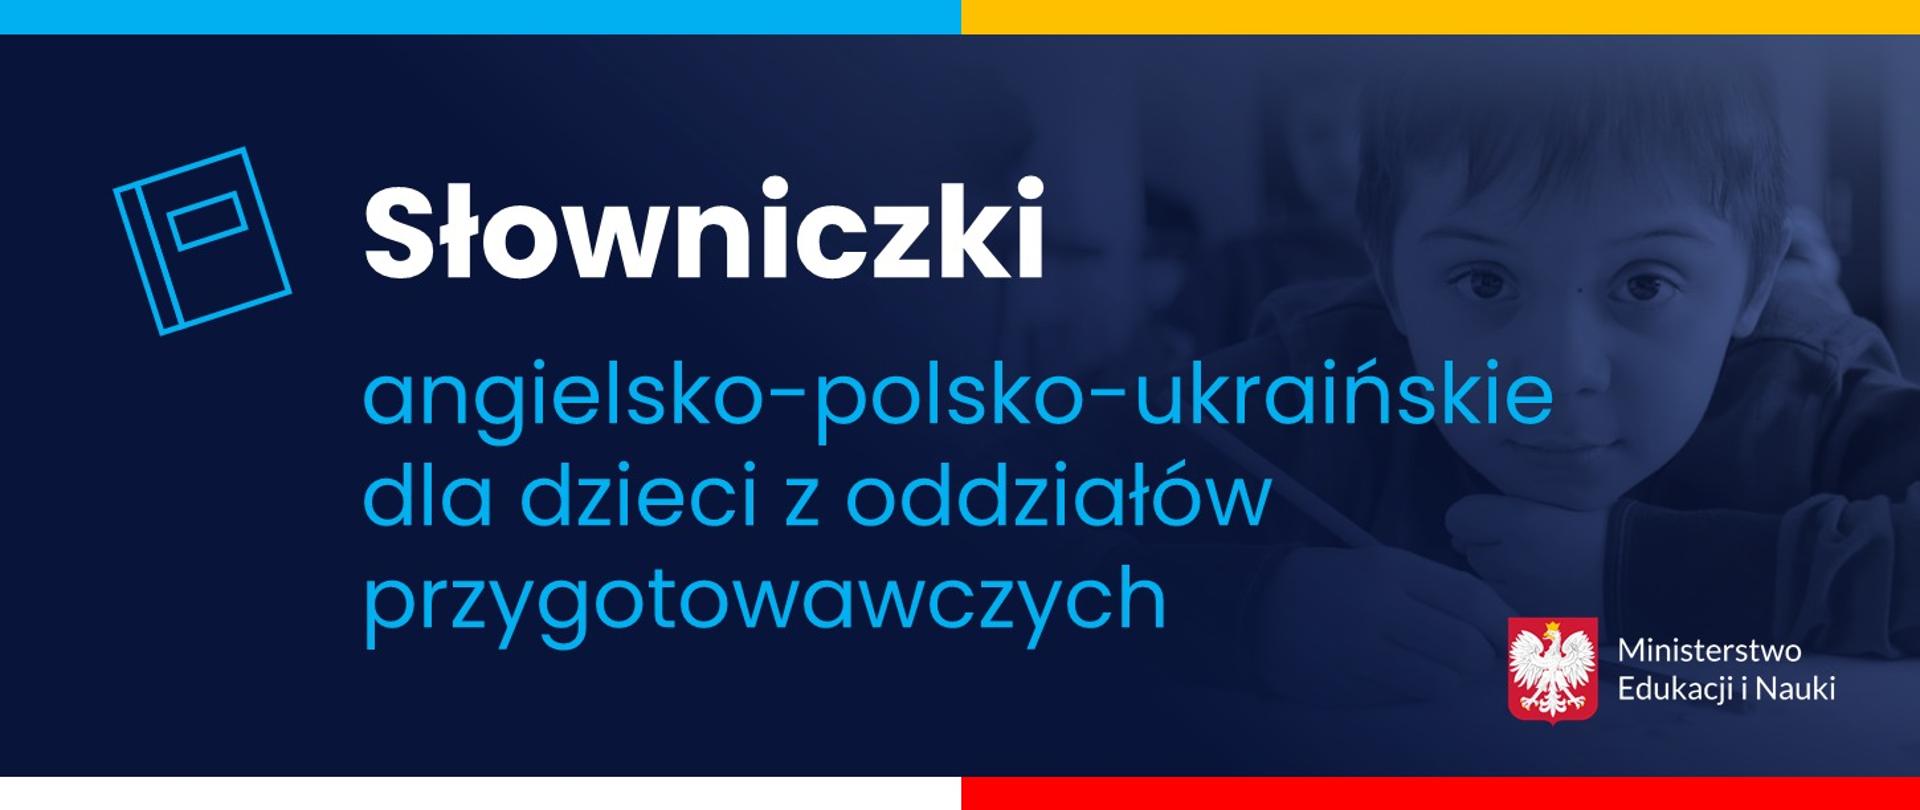 Grafika na granatowym tle z napisem: Słowniczki angielsko - polsko - ukraińskie dla dzieci z oddziałów przygotowawczych.